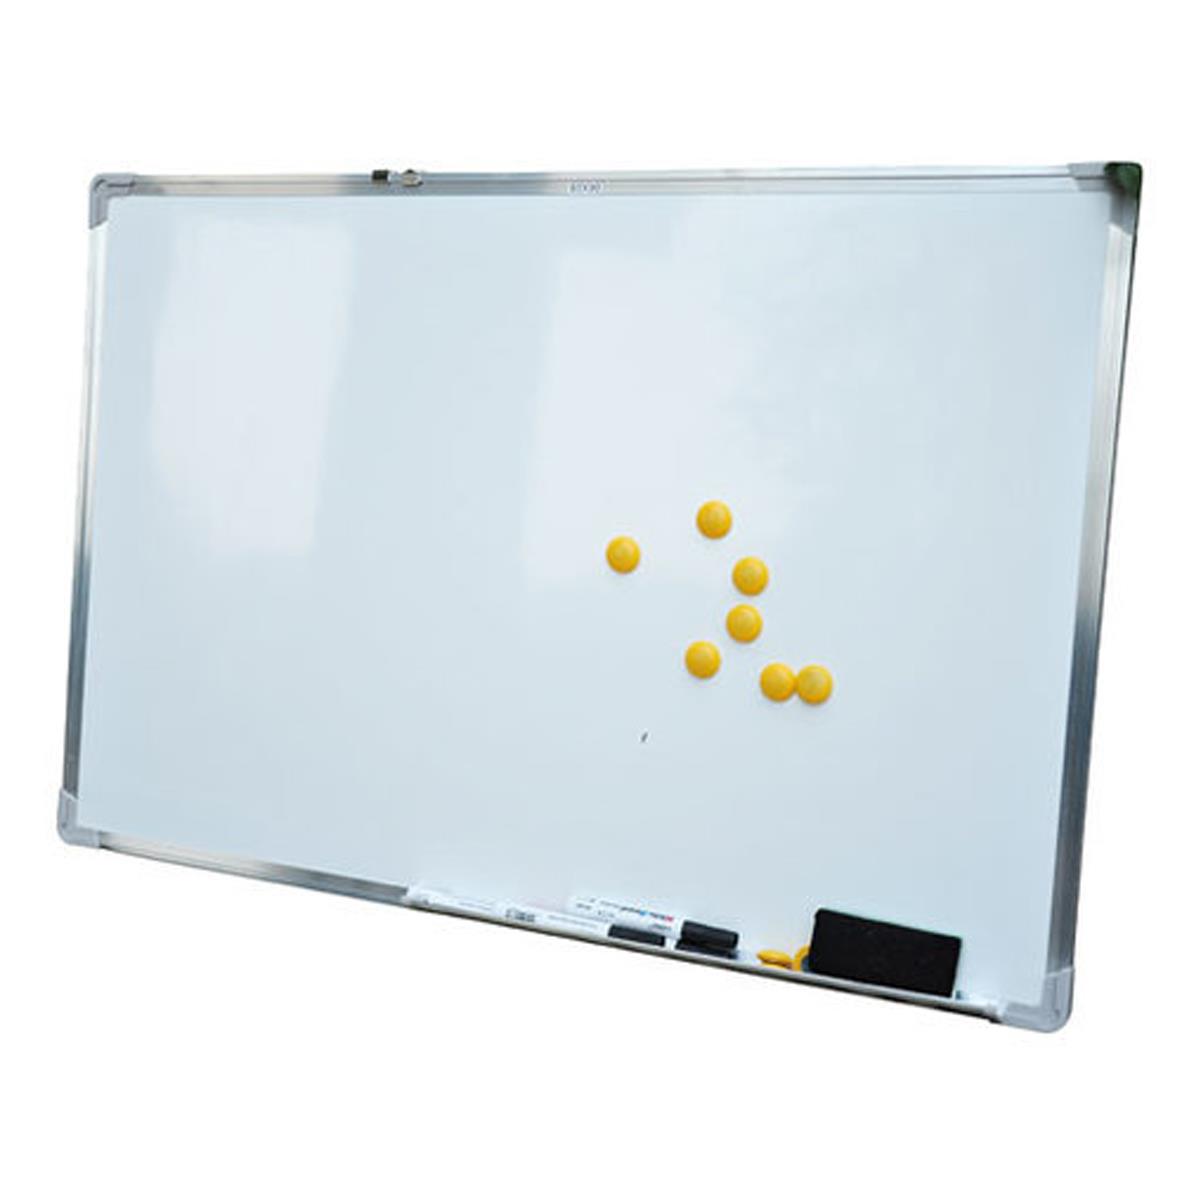 Whiteboard PALMIRA, 60x90 cm, Magnettafel mit 10 Magneten, 1 Schwamm und 4 Markern